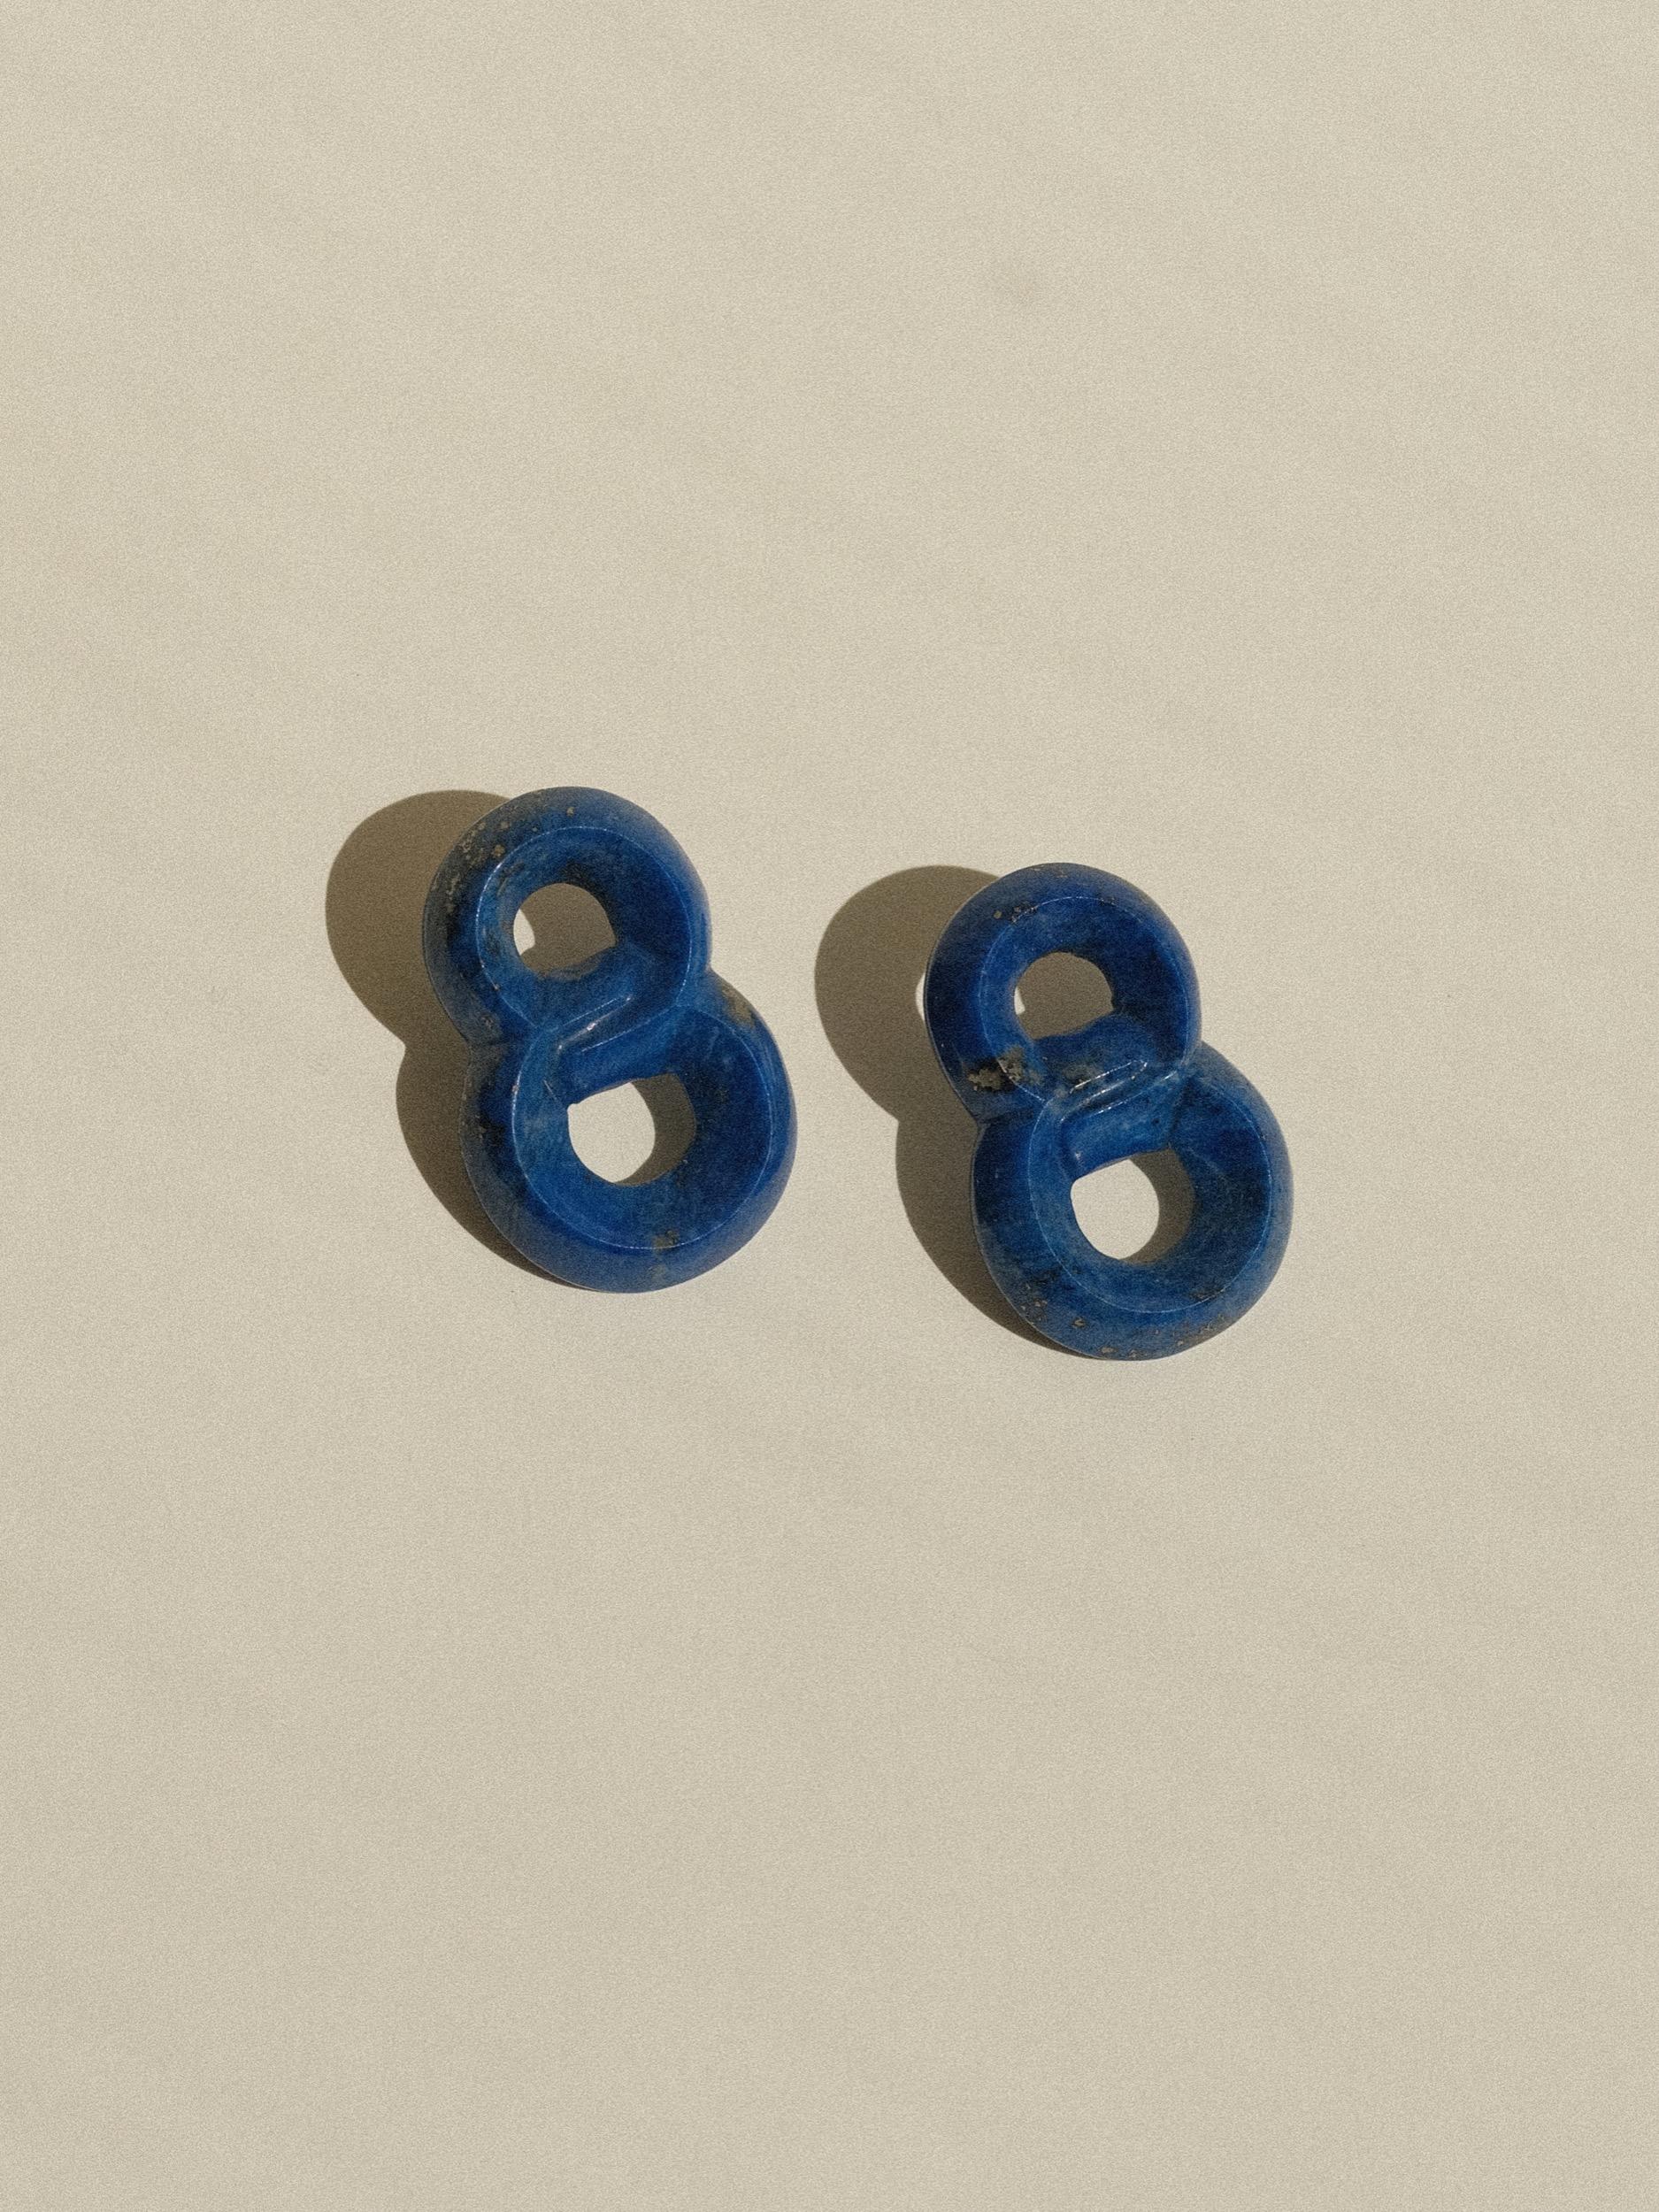 Boucles d'oreilles en lapis-lazuli sculpté à la main
Sans marque, d'un fabricant inconnu
Chacun mesure 1,5 pouce de longueur (goutte) 
1 pouce de largeur
Pesant 8 grammes par boucle d'oreille
Dos percé
En excellent état